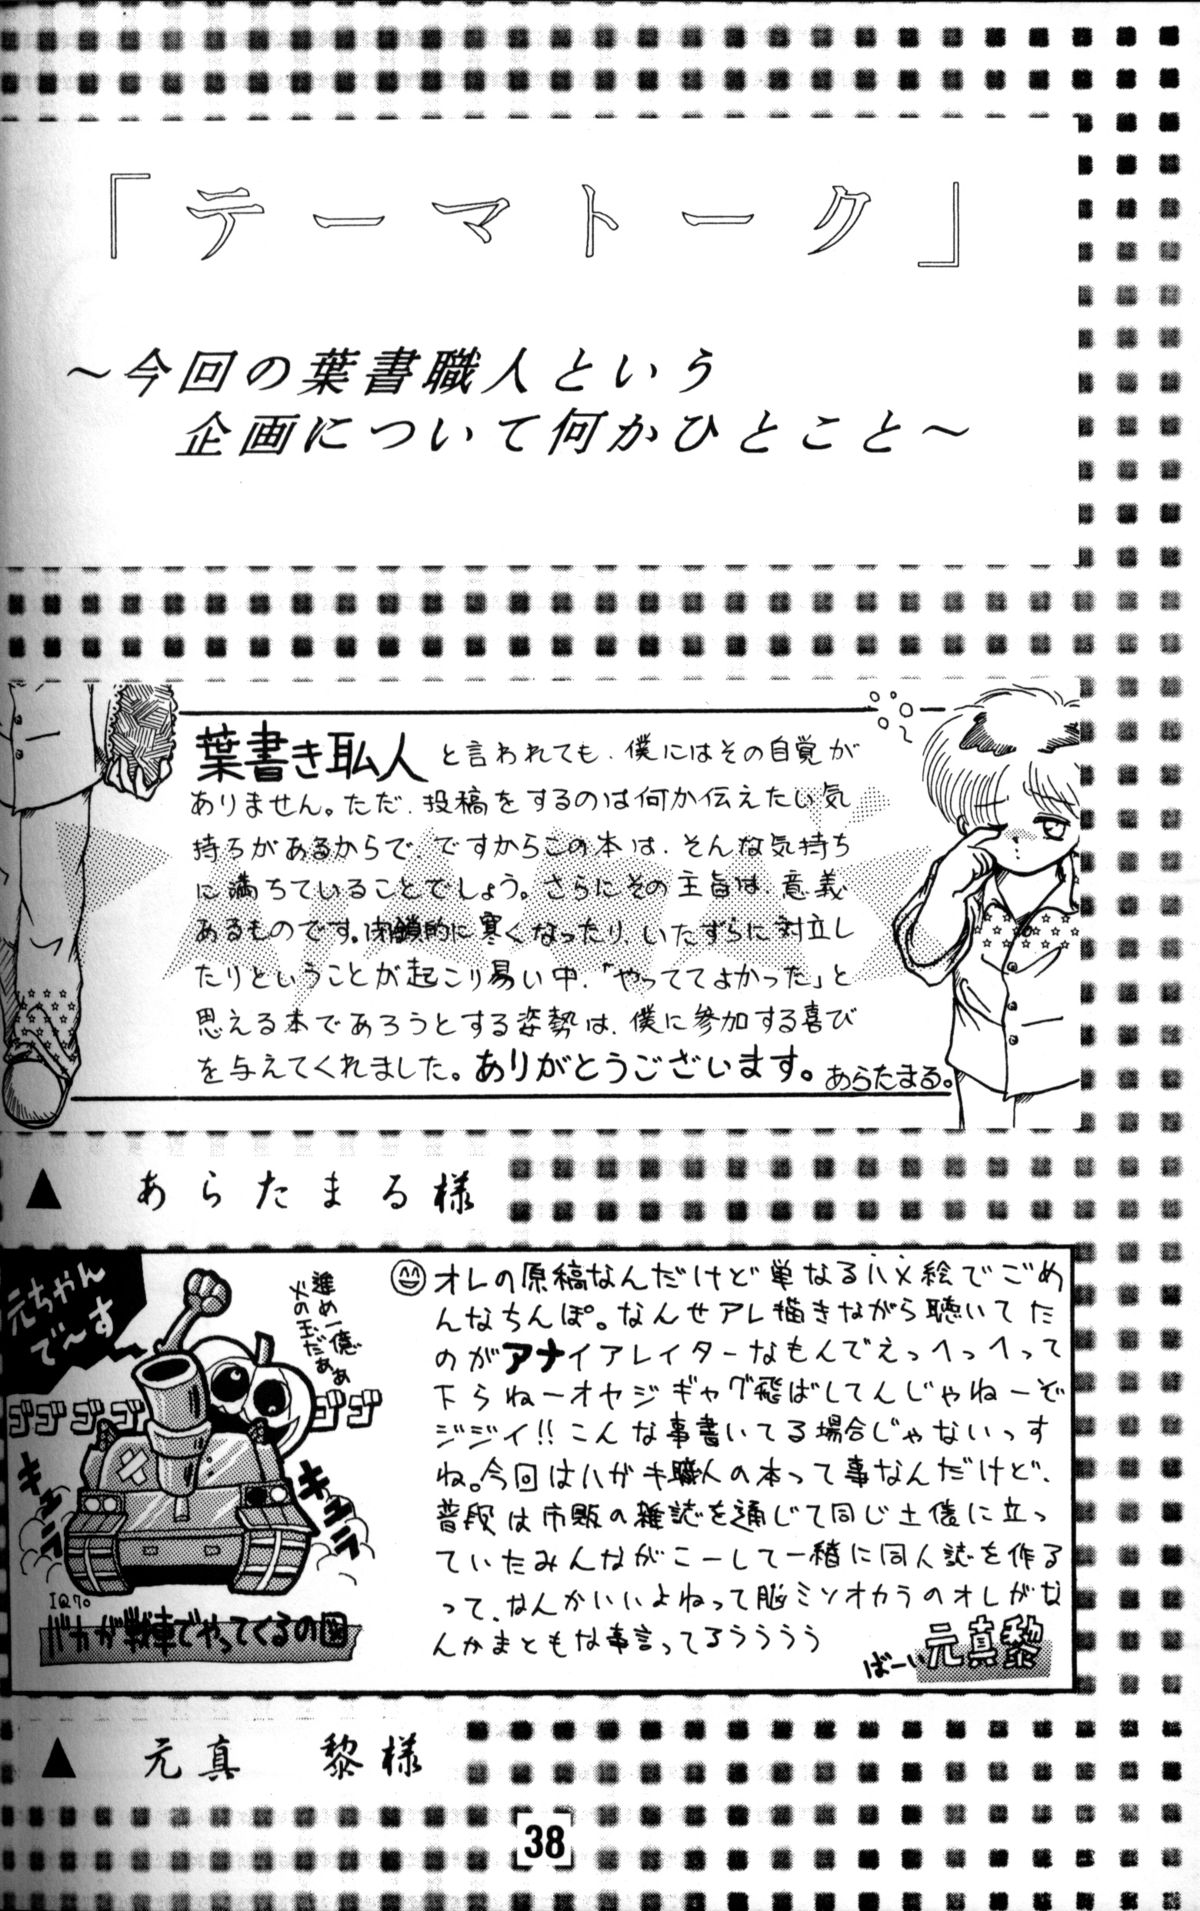 Anthology - Nekketsu Project - Volume 1 'Shounen Banana Milk' page 37 full